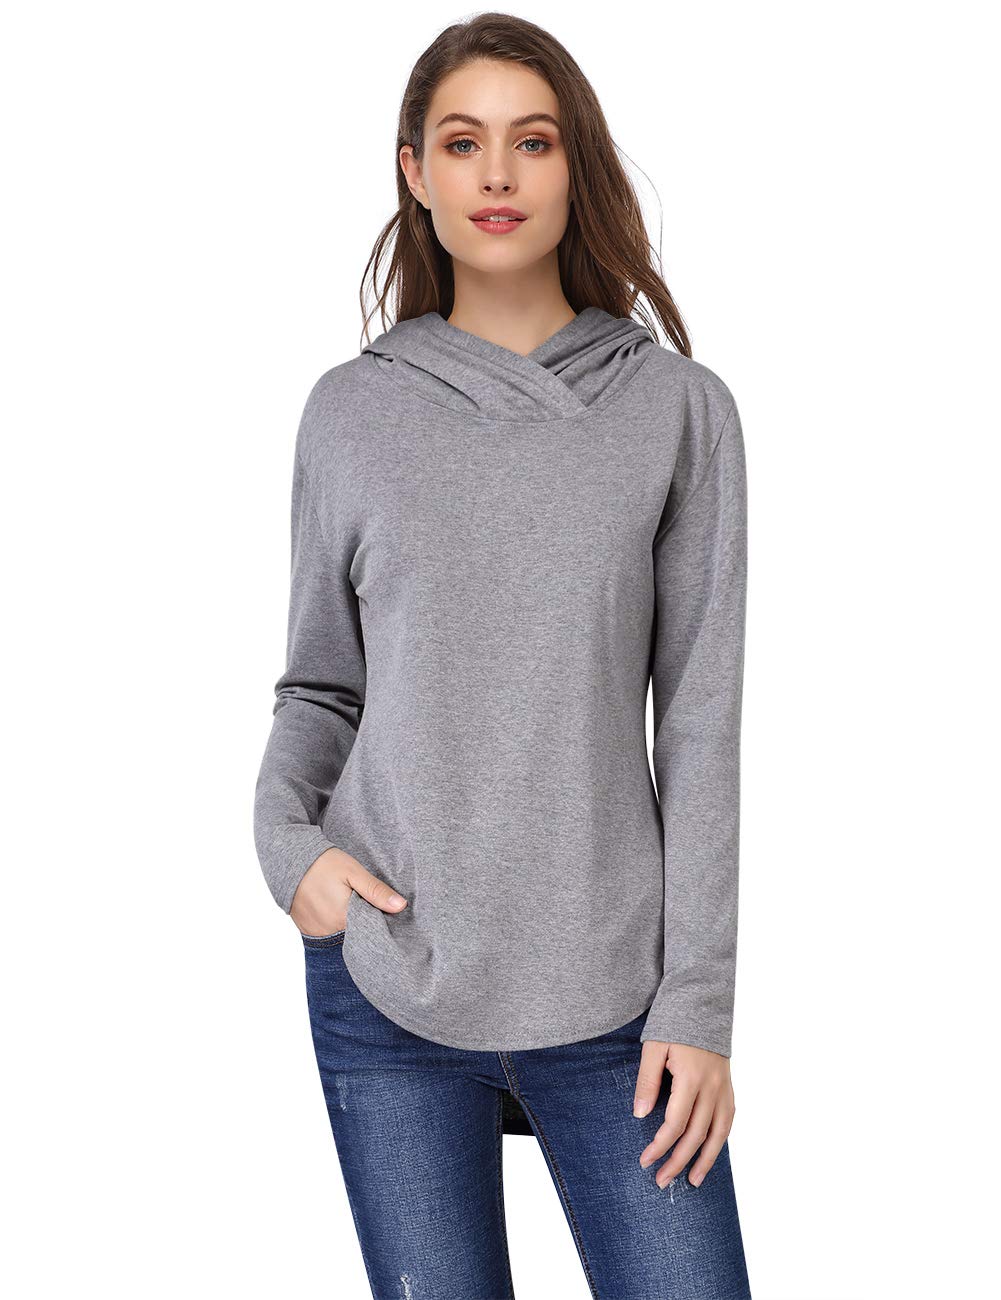 Women Long Sleeve Pullover Hoodies Tops Casual Loose Hooded Sweatshirt